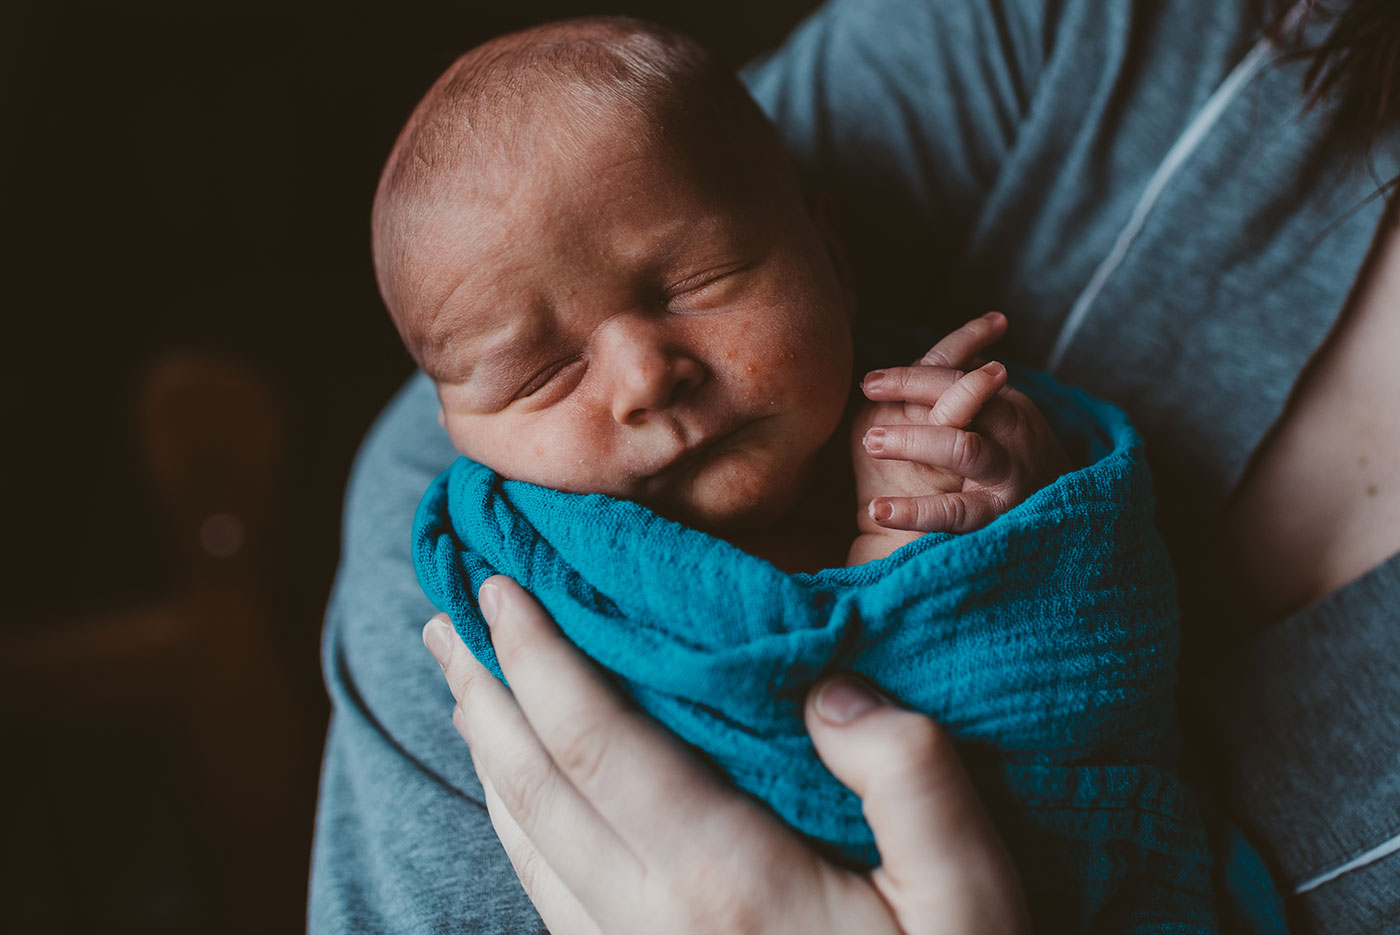 newborn baby boy swaddled in a blue blanket